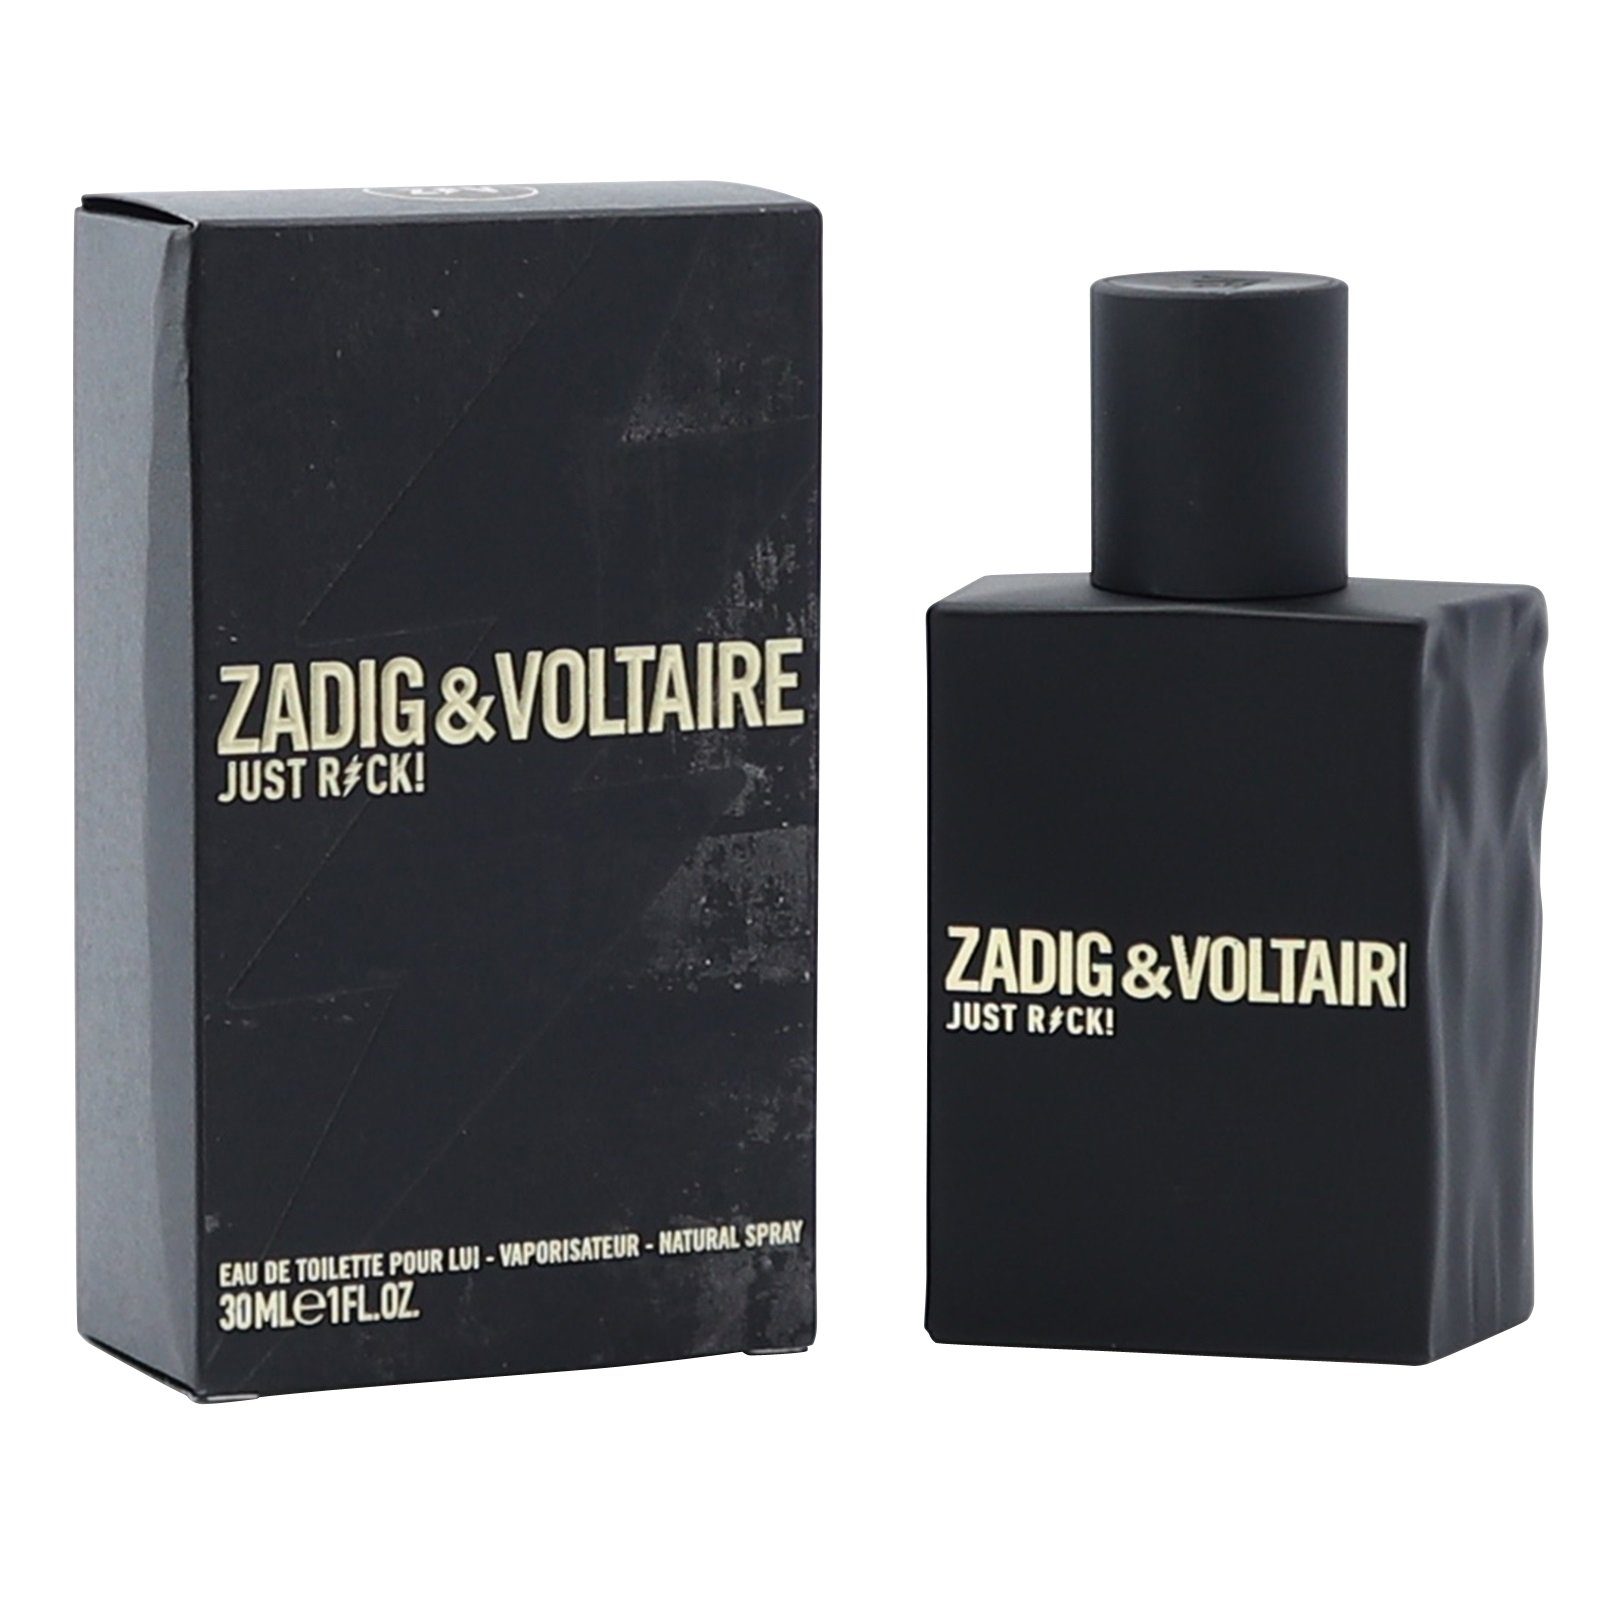 ZADIG & VOLTAIRE Eau de Toilette Zadig & Voltaire Just Rock! for Him Lui Eau de Toilette Spray 30 ml